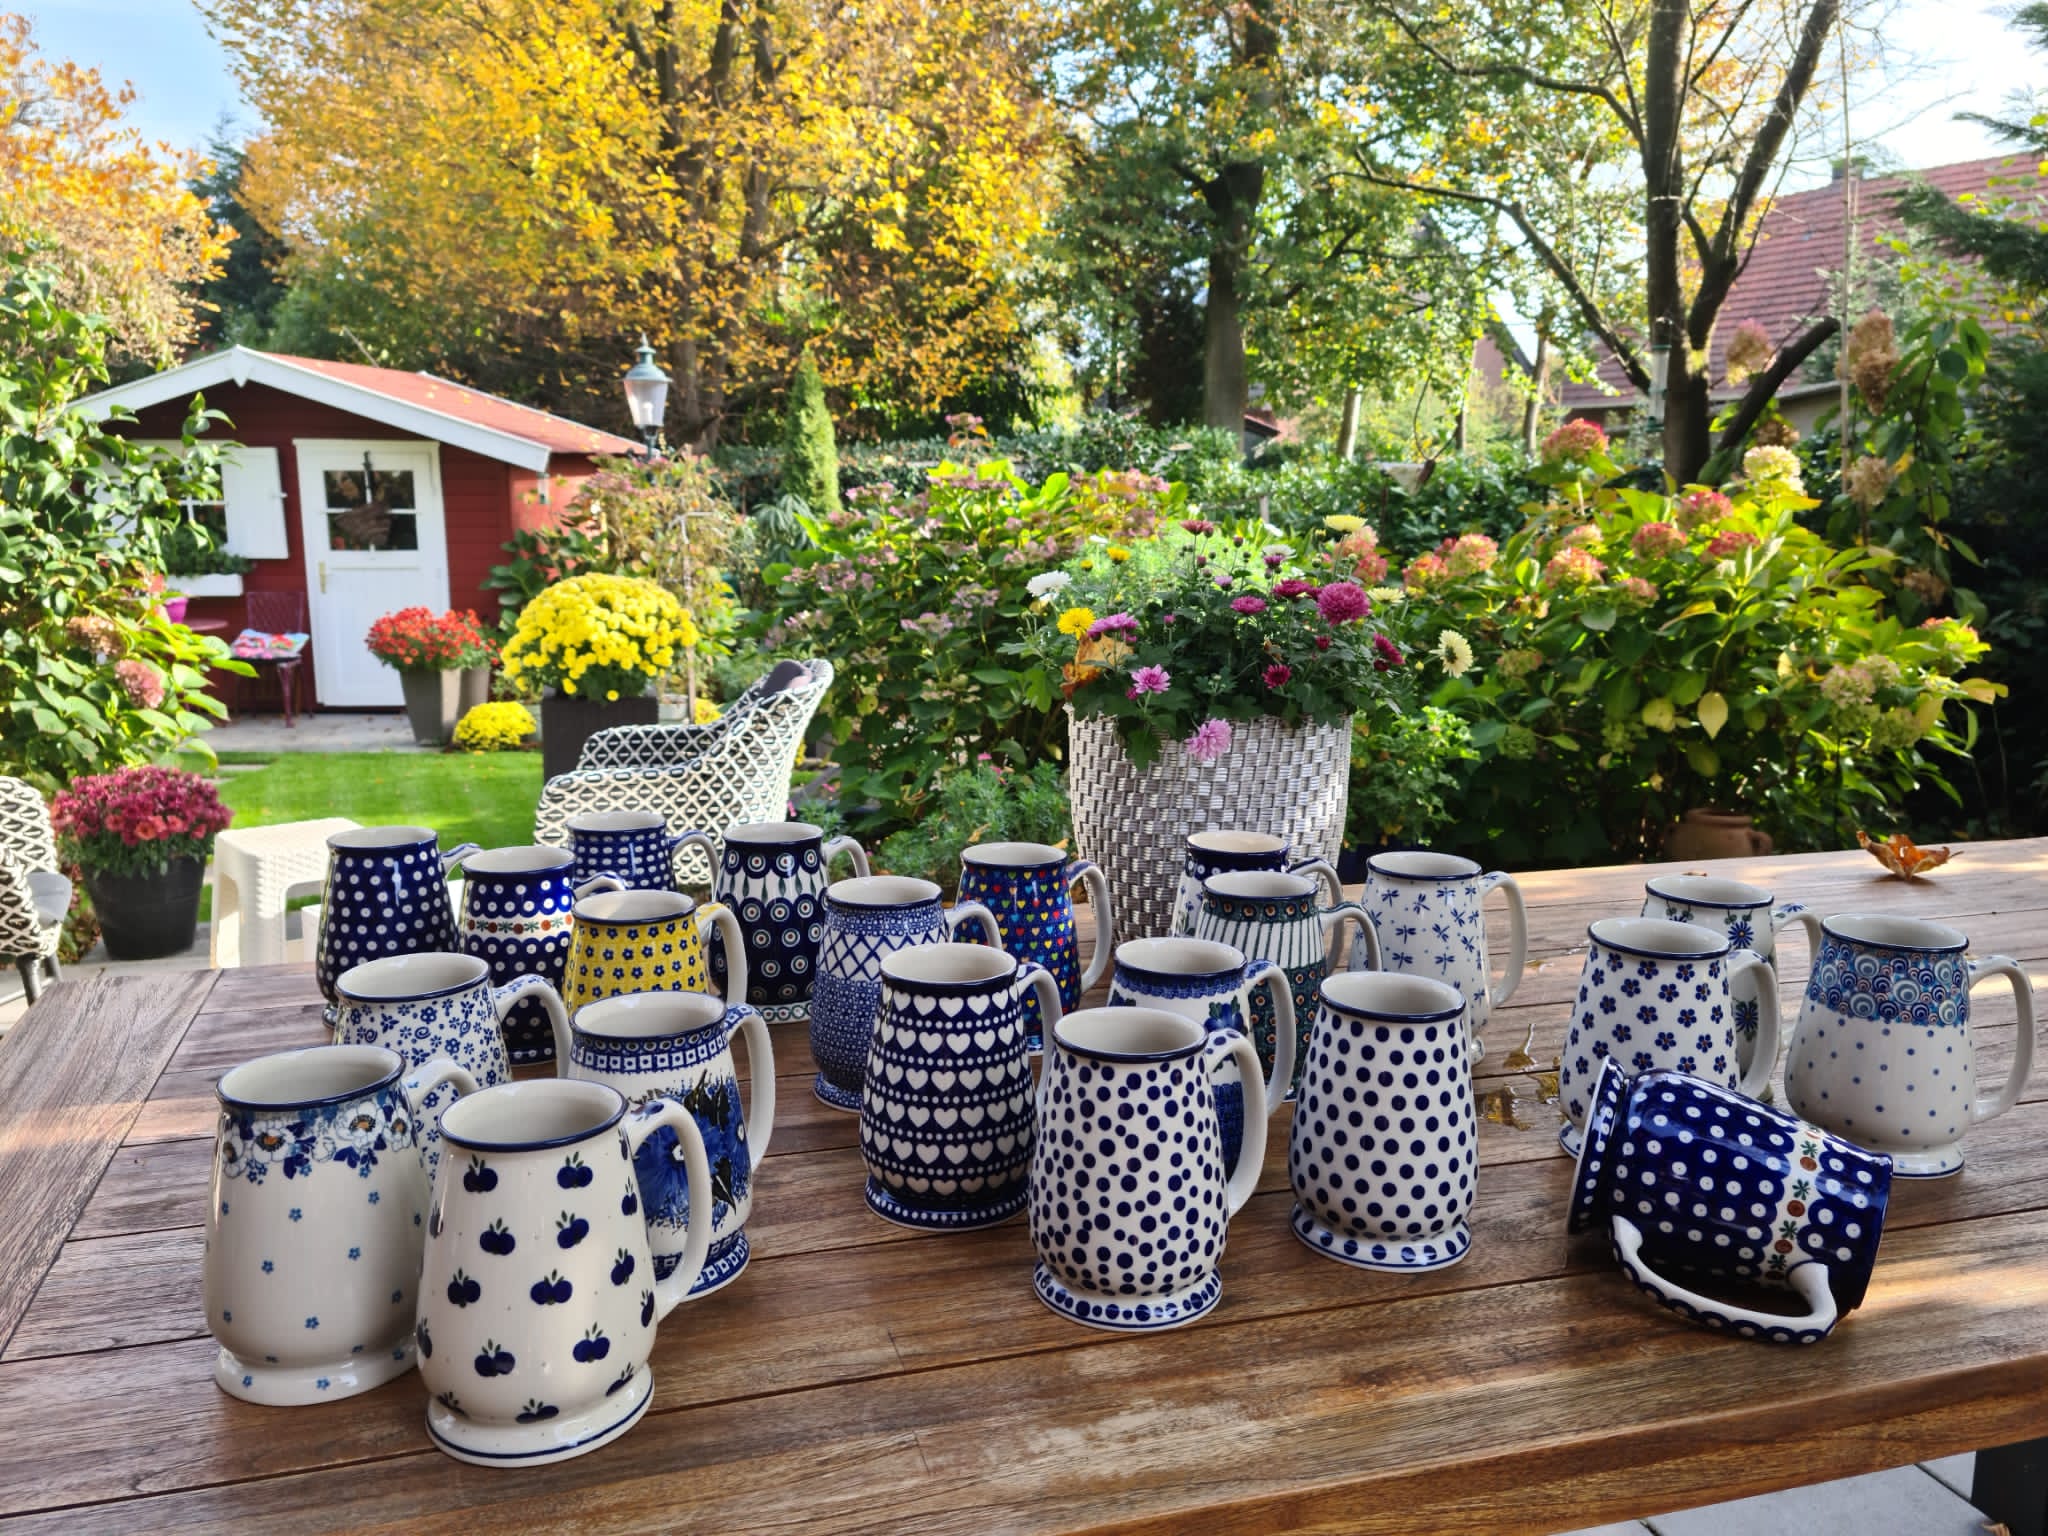 typist Cadeau Aankondiging Bierkruik voor 0,5 liter kopen in Bunzlauergrosshandel | Polish pottery  Webshop